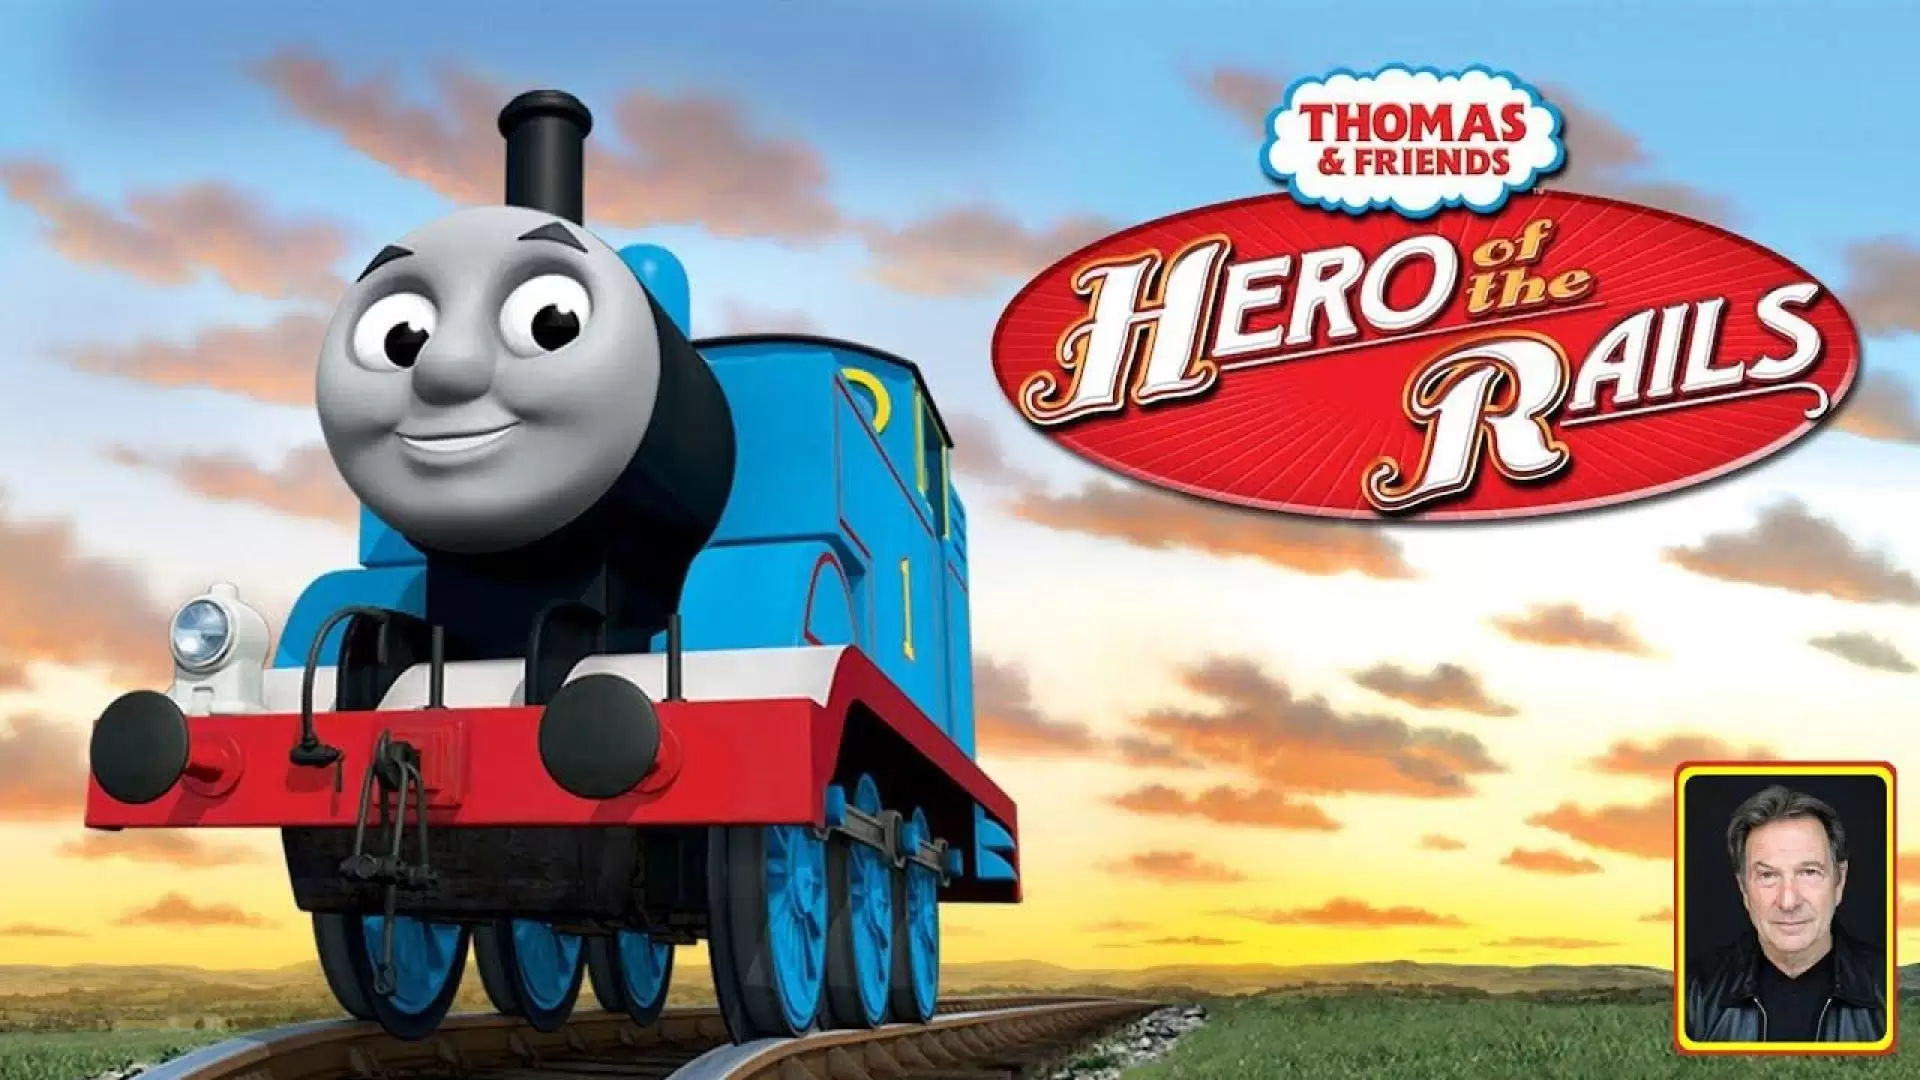 دانلود انیمیشن Thomas & Friends: Hero of the Rails 2009